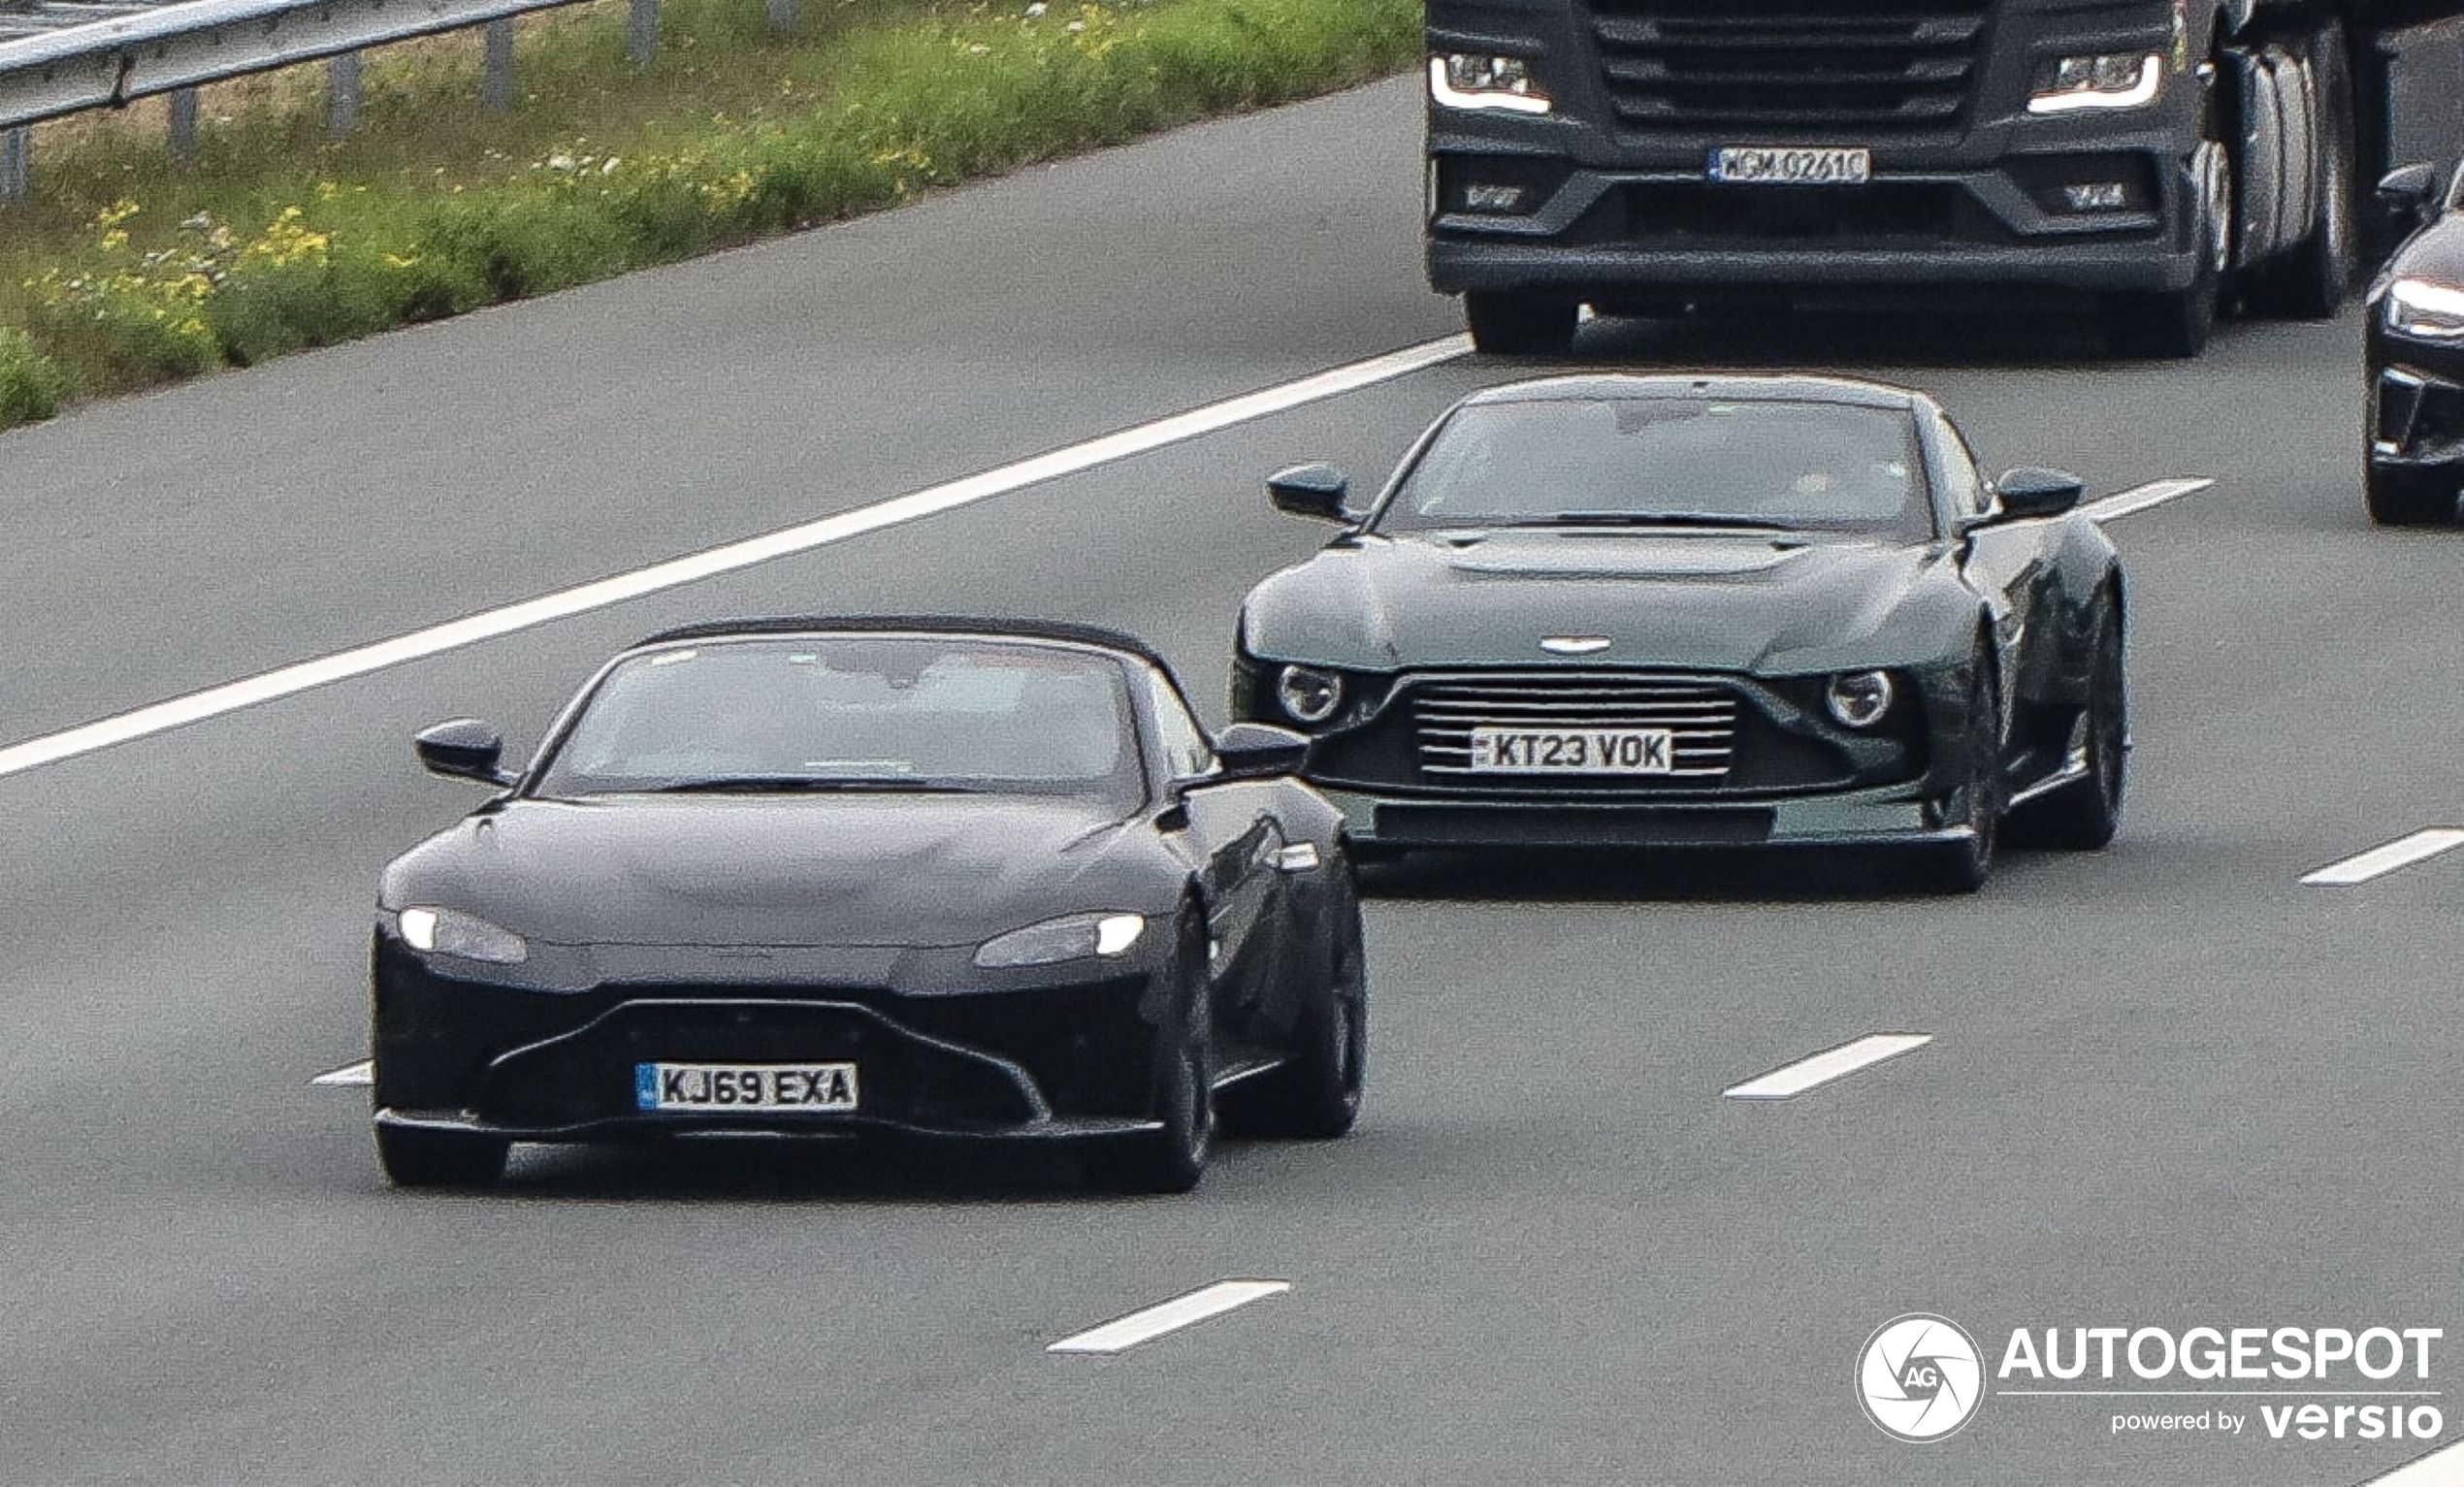 Der allererste Aston Martin Valour wird auf der Autobahn entdeckt